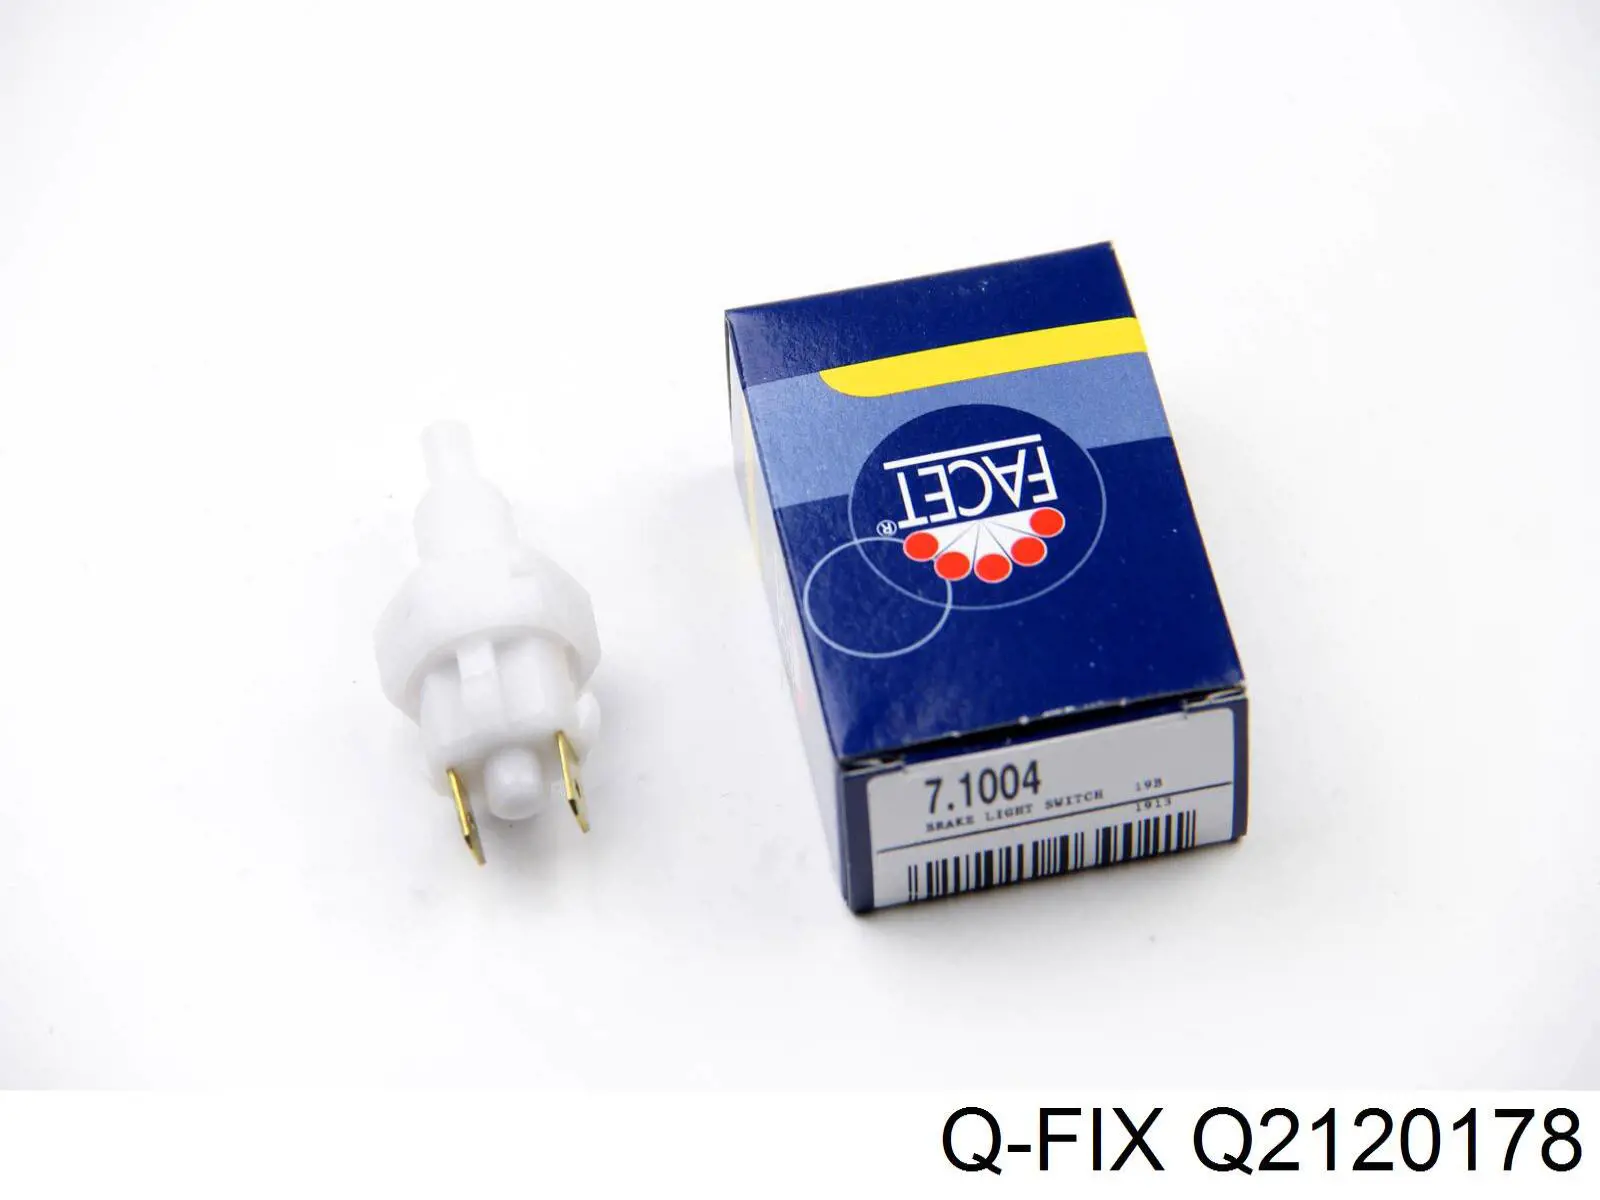 Q2120178 Q-fix interruptor luz de freno